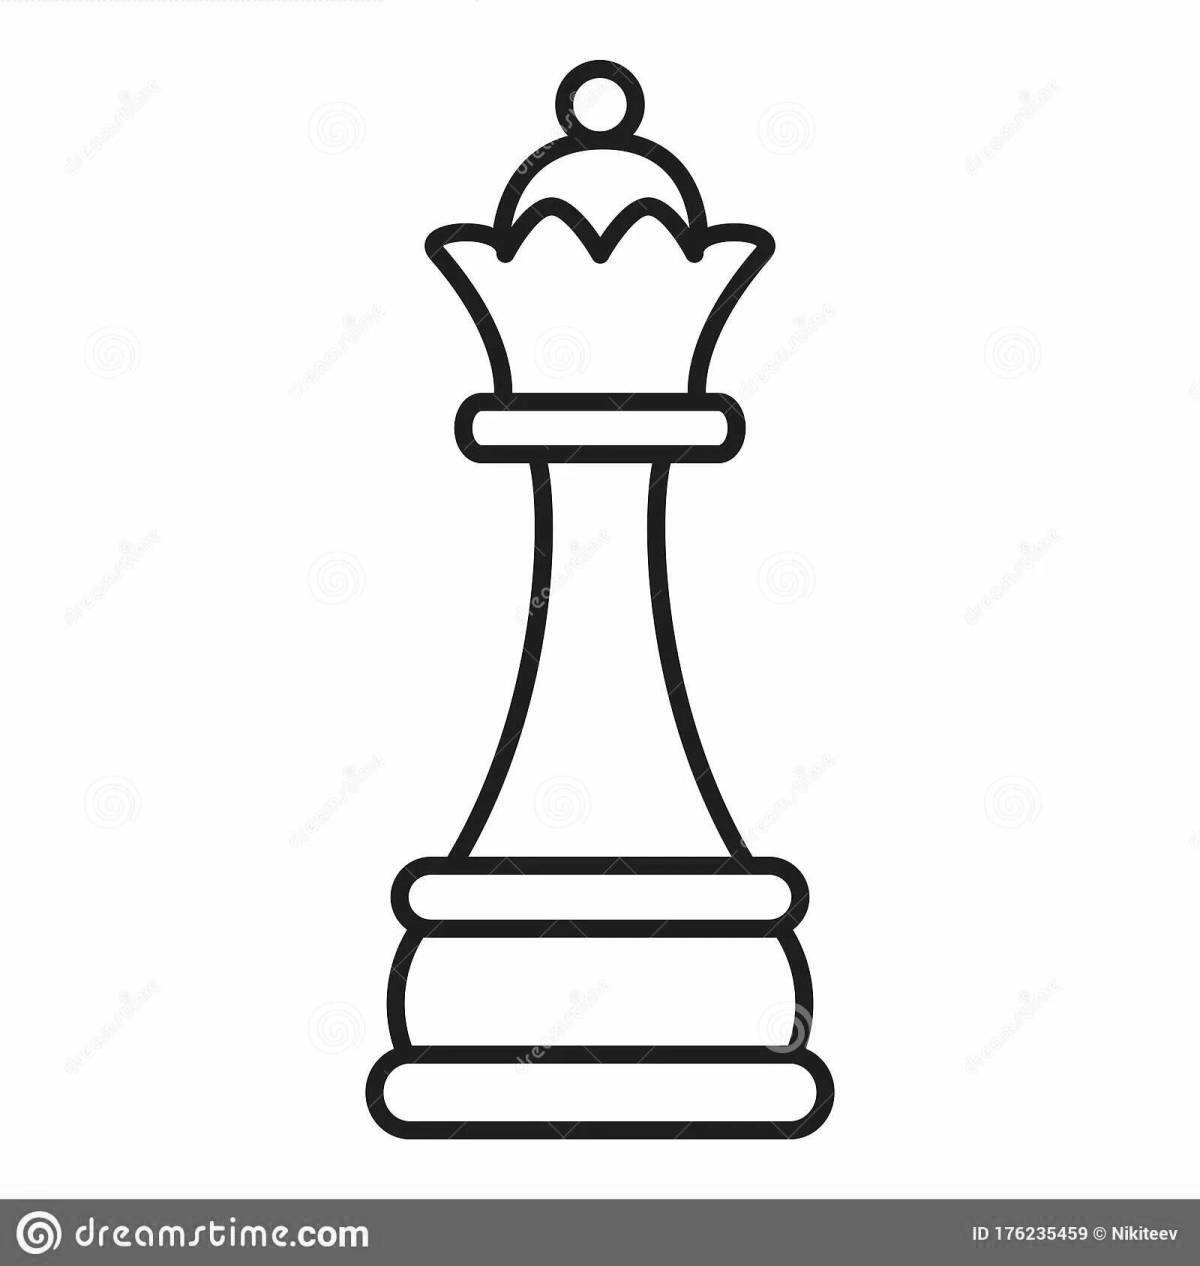 Chess queen #2